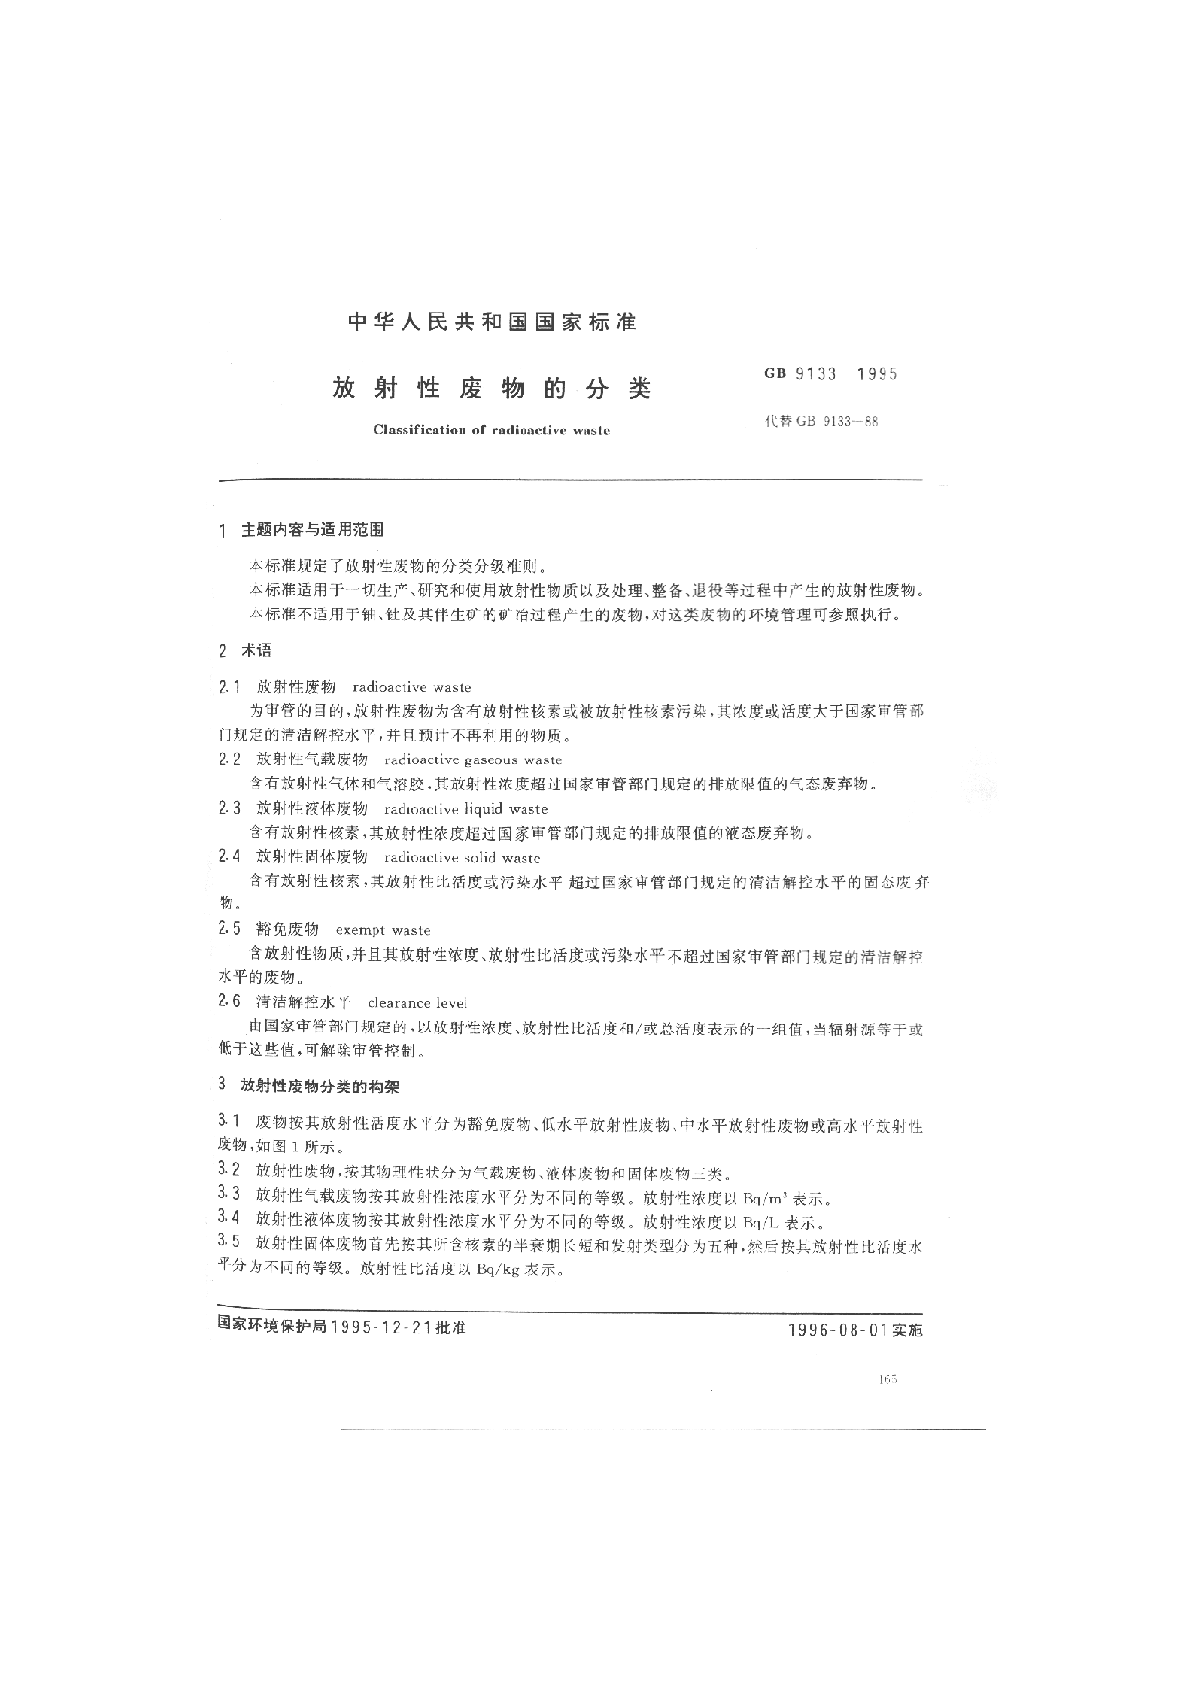 GB 9133-1995 放射性废物的分类-图一